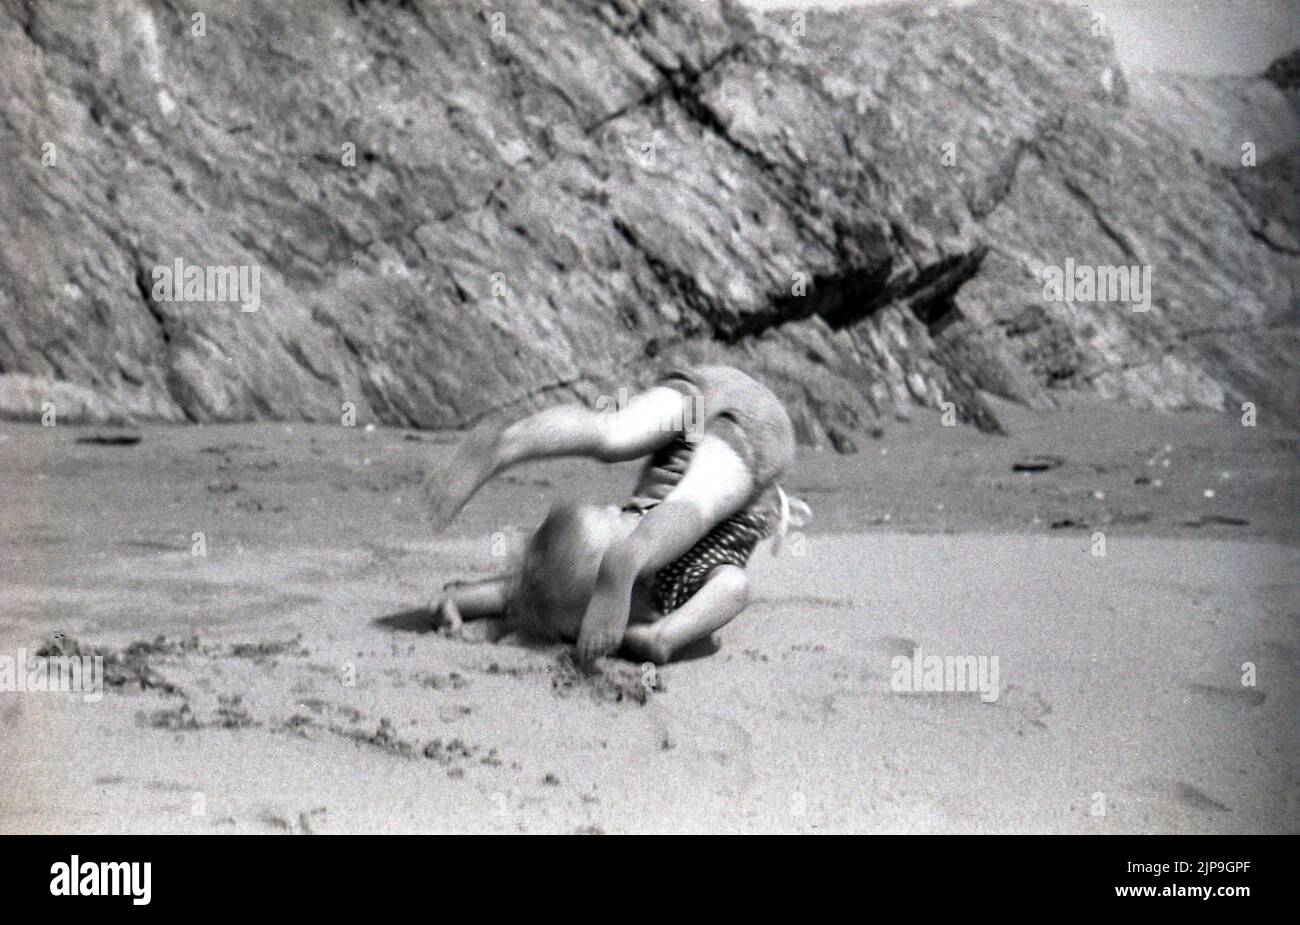 1950, bébé garçon faisant un rollover sur une plage de sable, Angleterre, Royaume-Uni. Banque D'Images